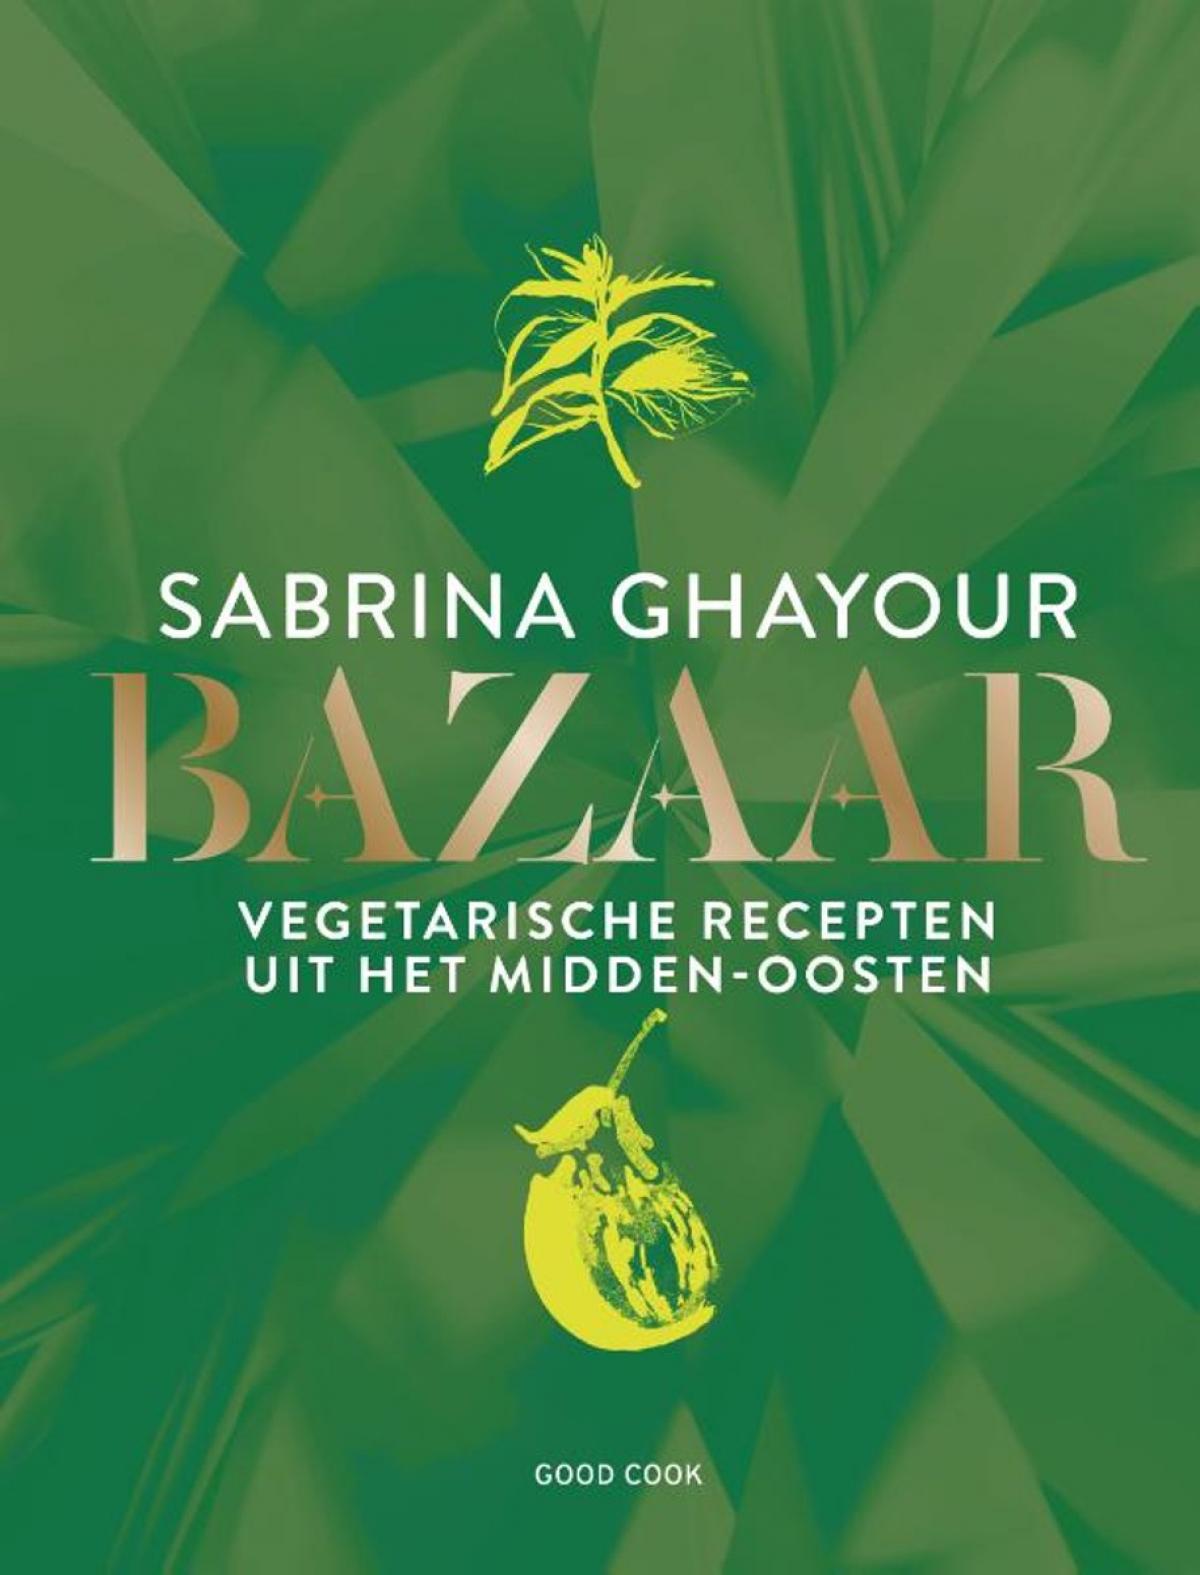 'Bazaar' van Sabrina Ghayour